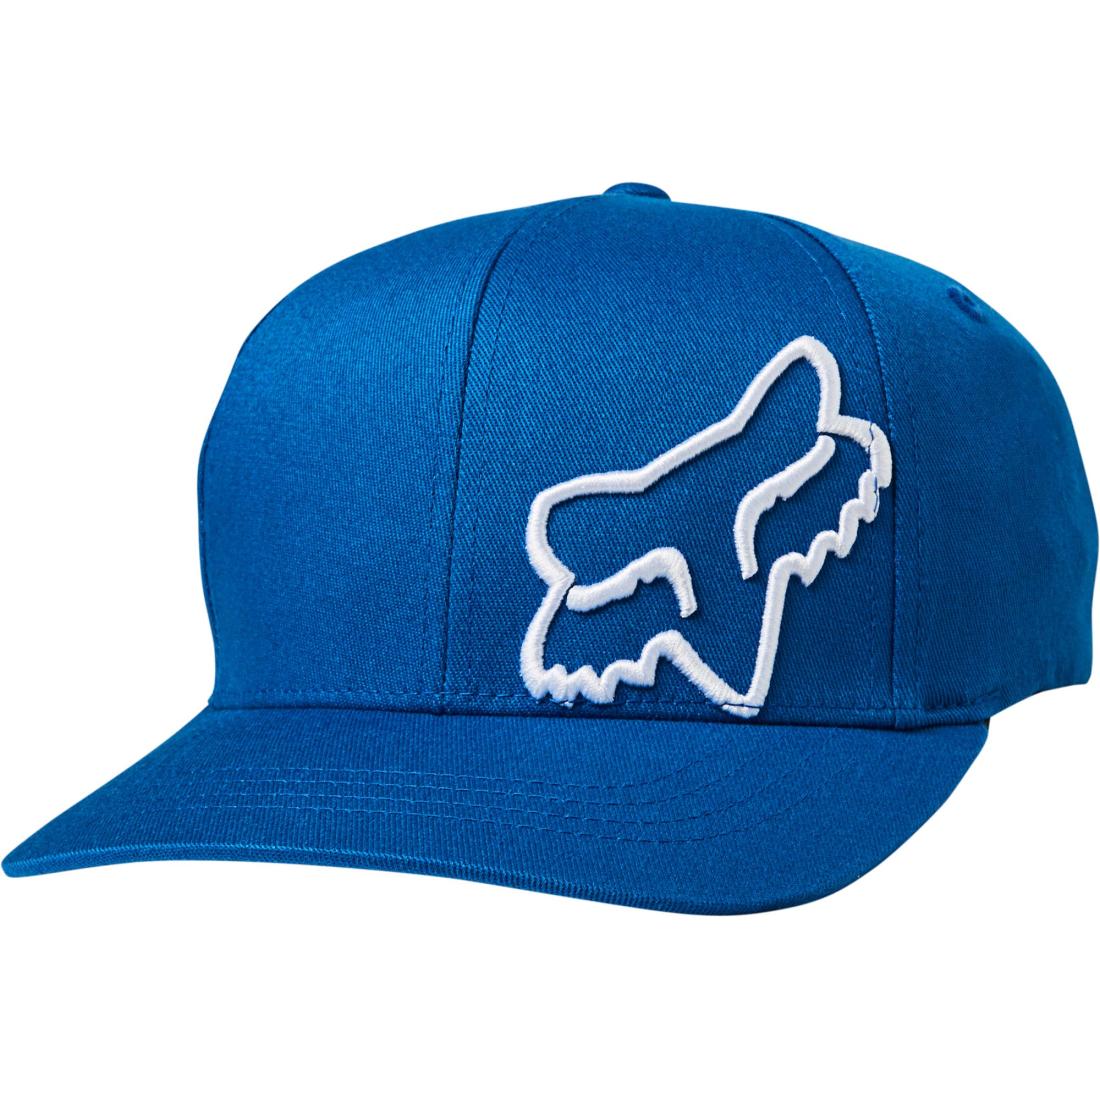 Youth Flex 45 Flexfit Hat Royal Blue